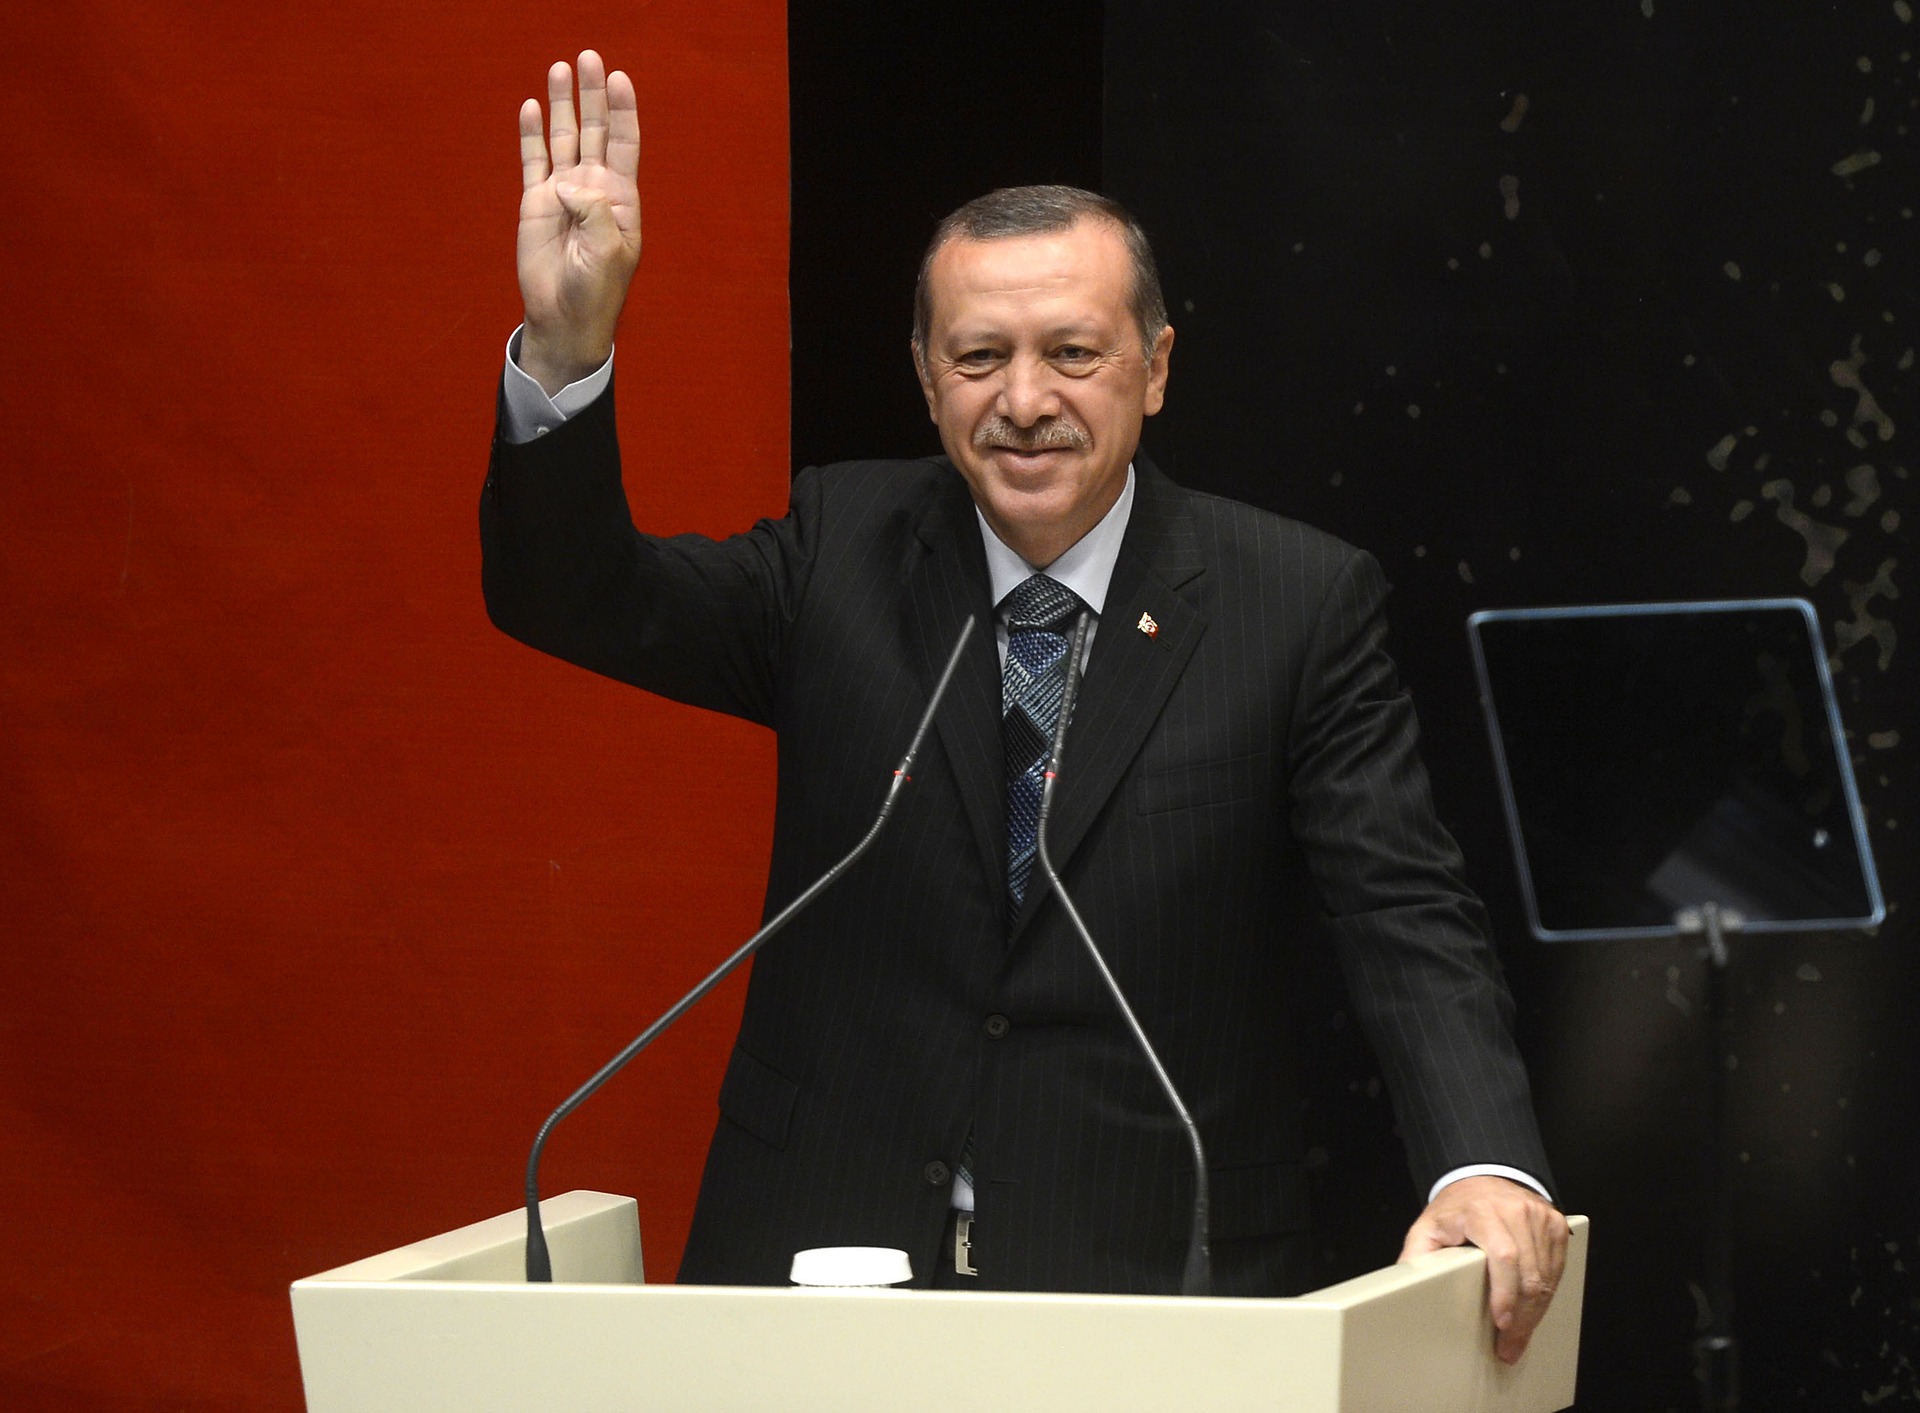 Erdogan sebut Macron butuh perawatan mental karena menyudutkan Muslim